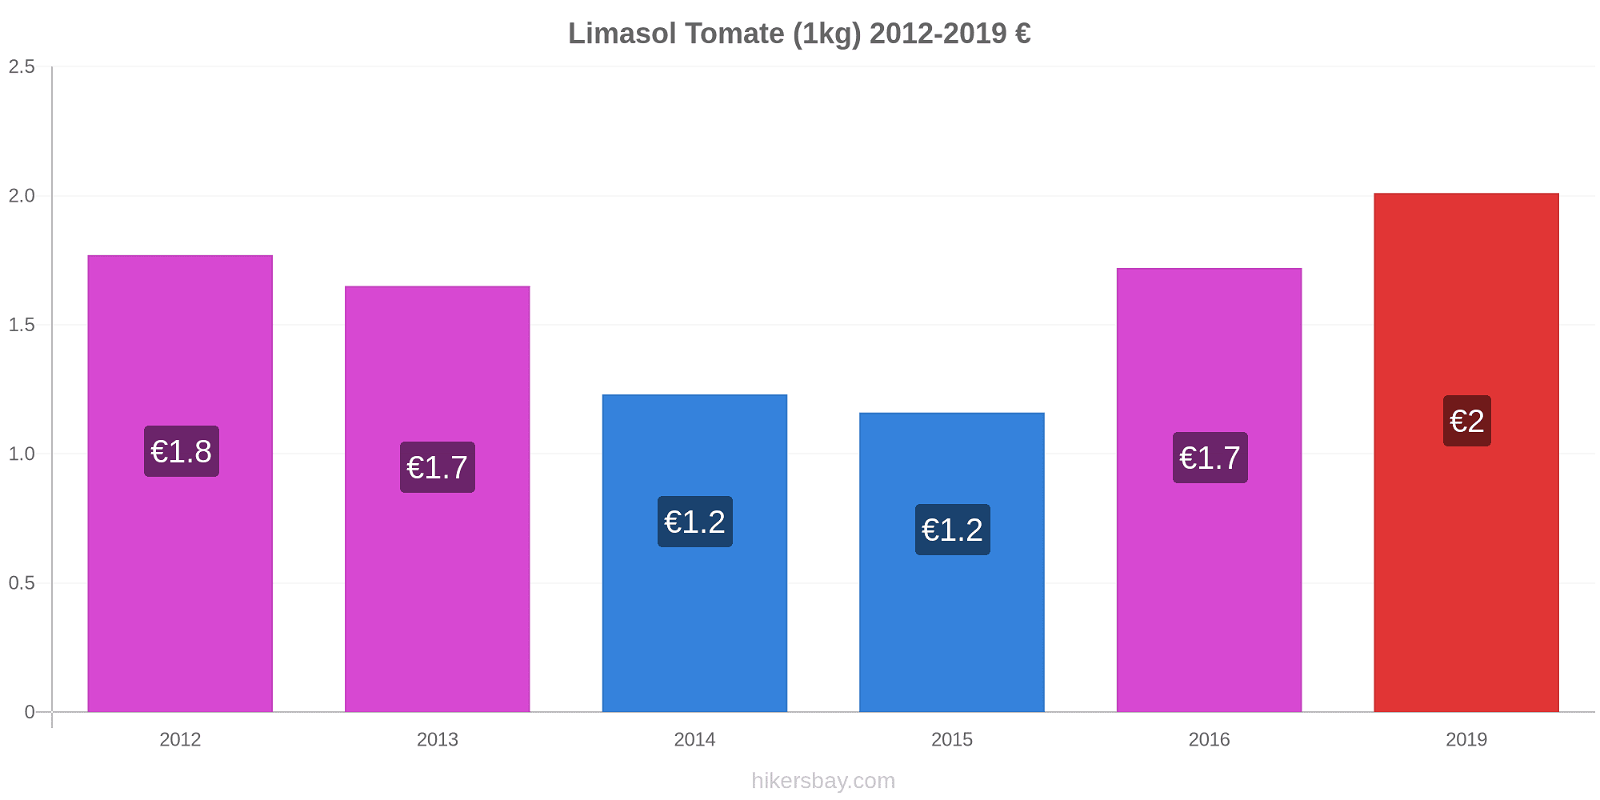 Limasol cambios de precios Tomate (1kg) hikersbay.com